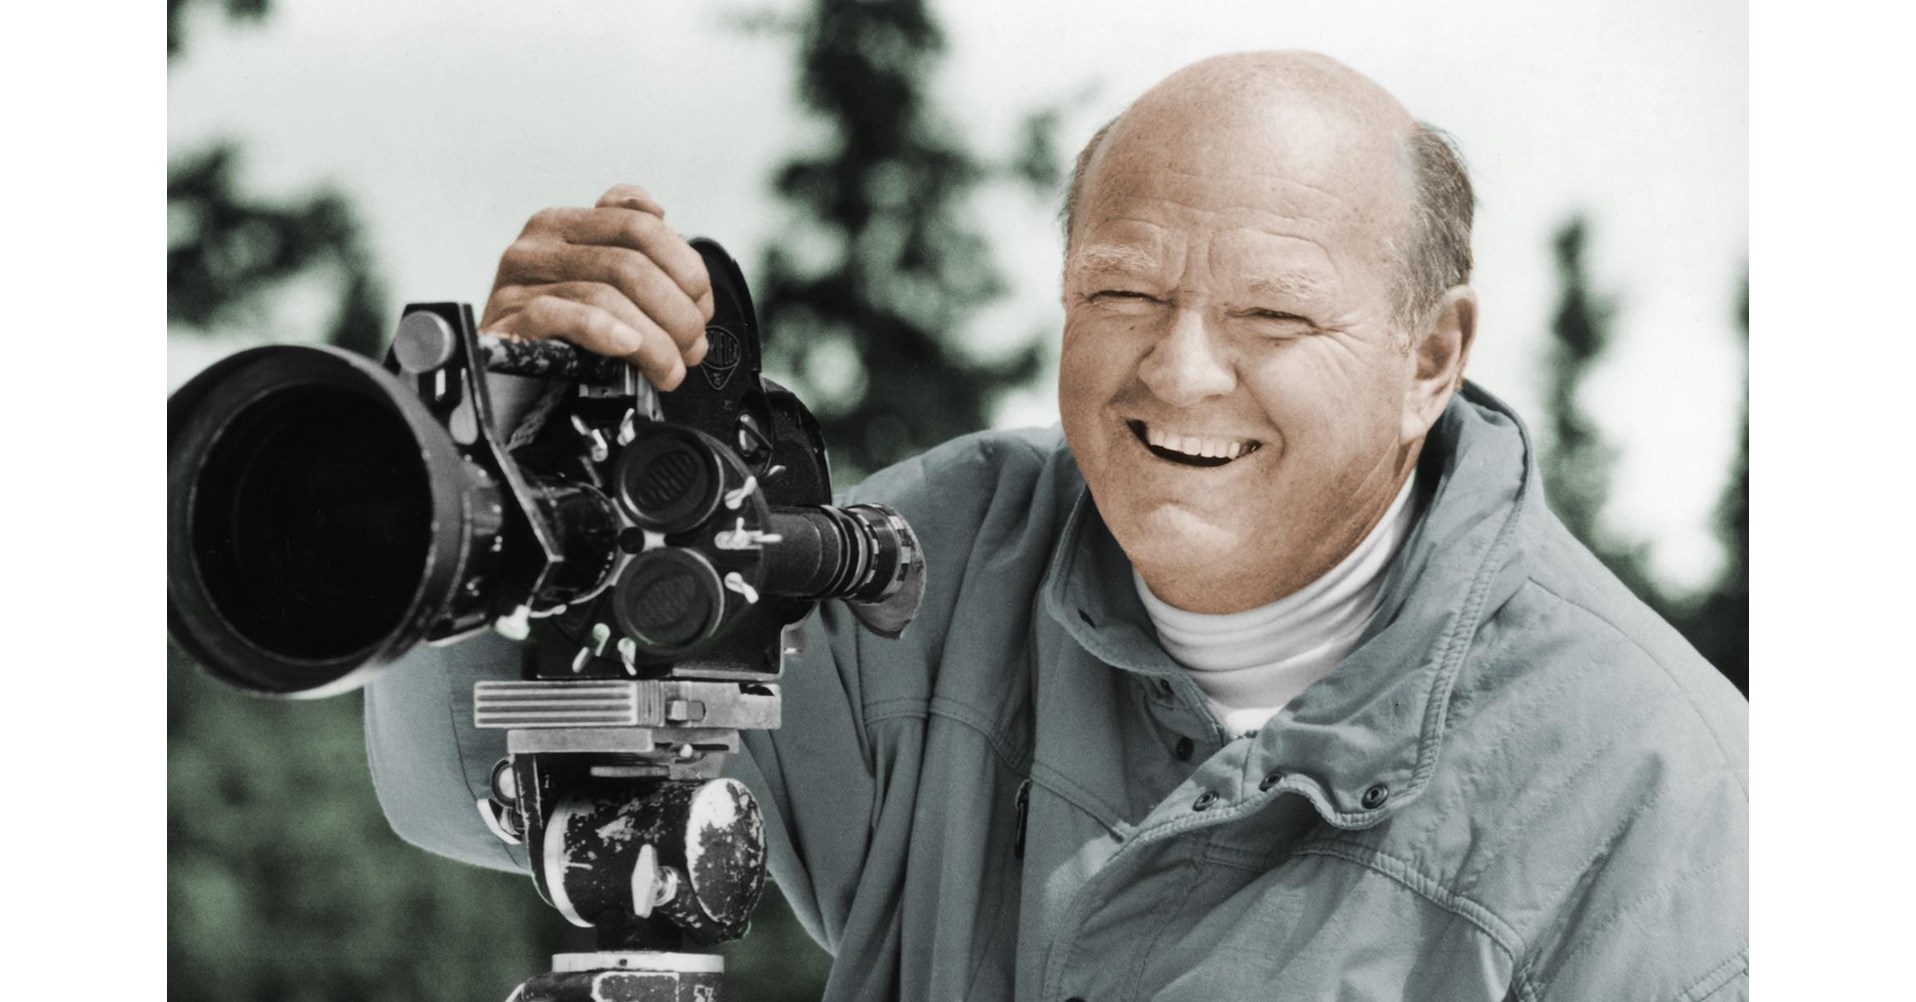 Authorized Documentary On Legendary Ski Filmmaker Warren Miller Nearing